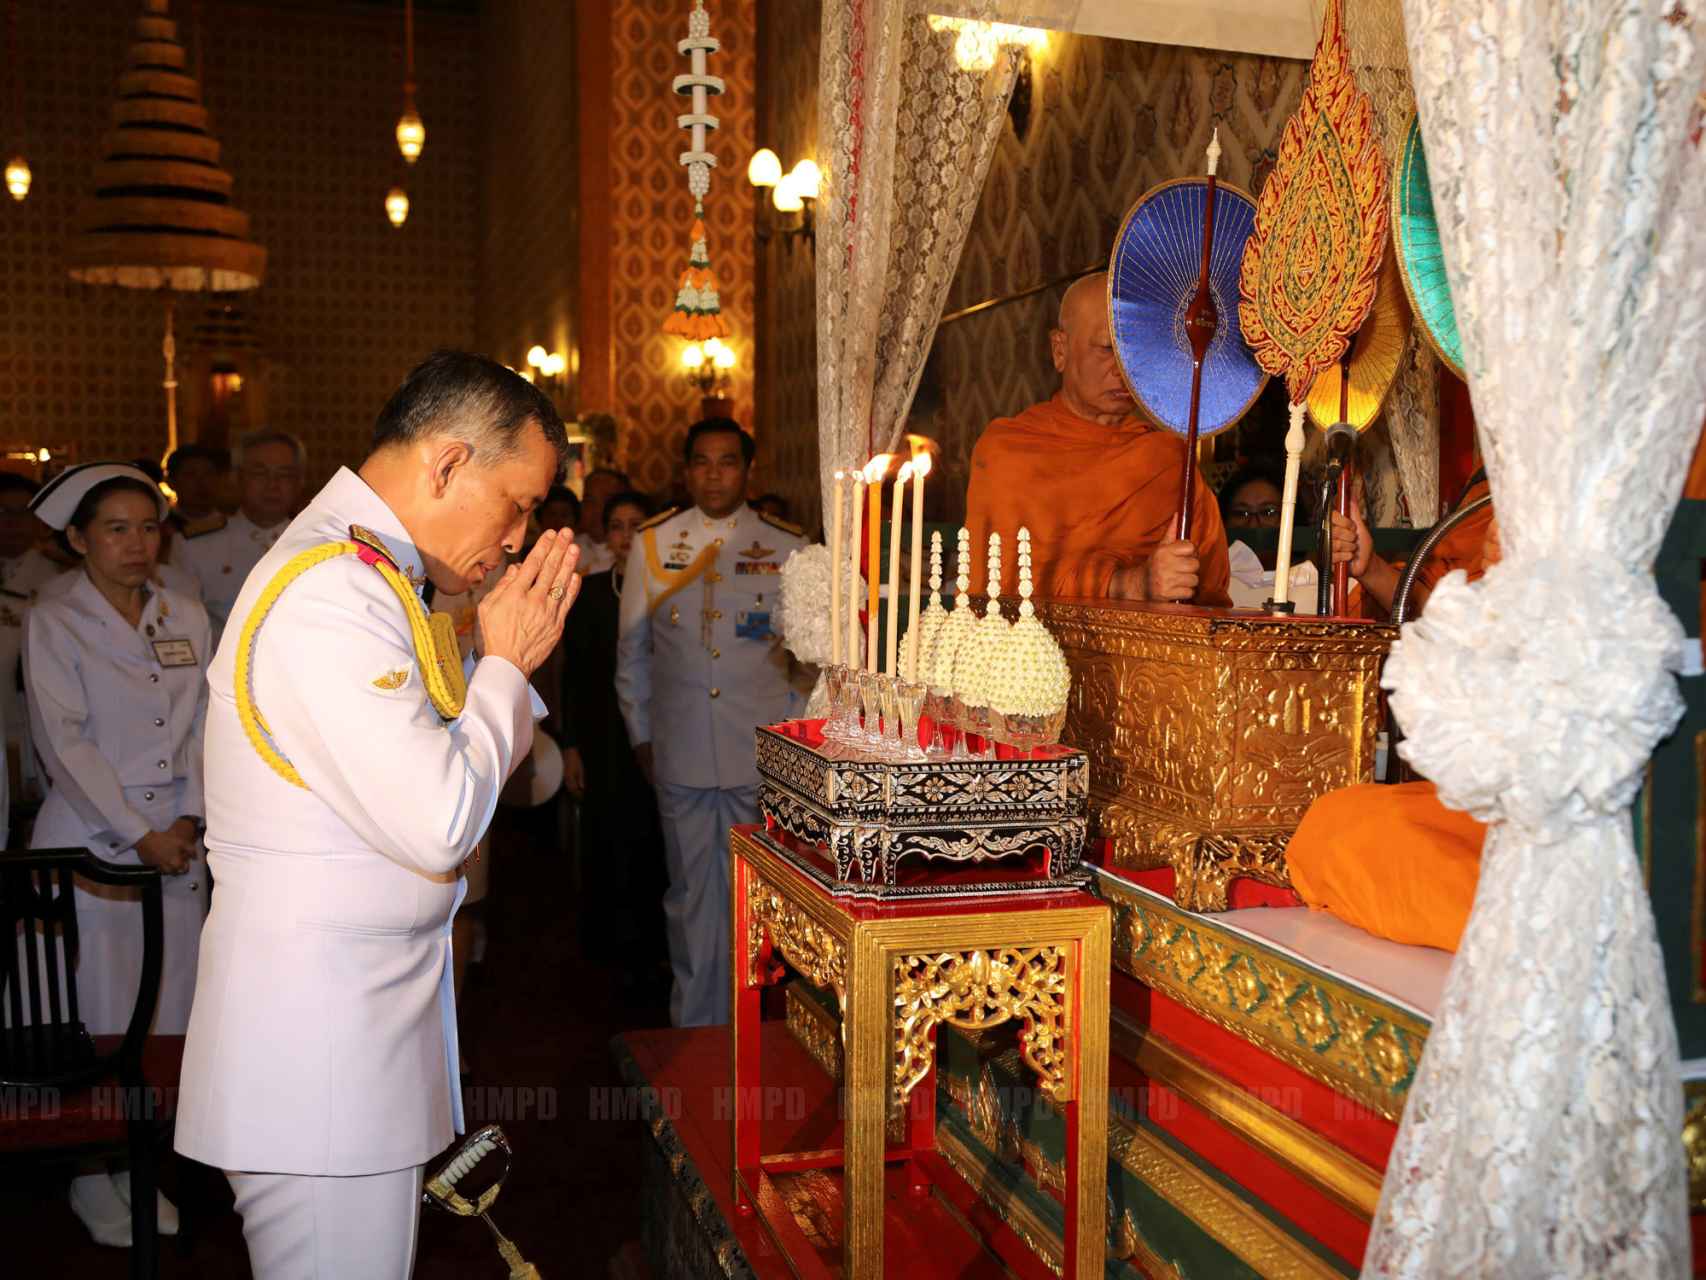 El heredero en una ceremonia mostrando sus respetos a Bhumibol Adulyadej en el Gran Palacio de Bangkok.